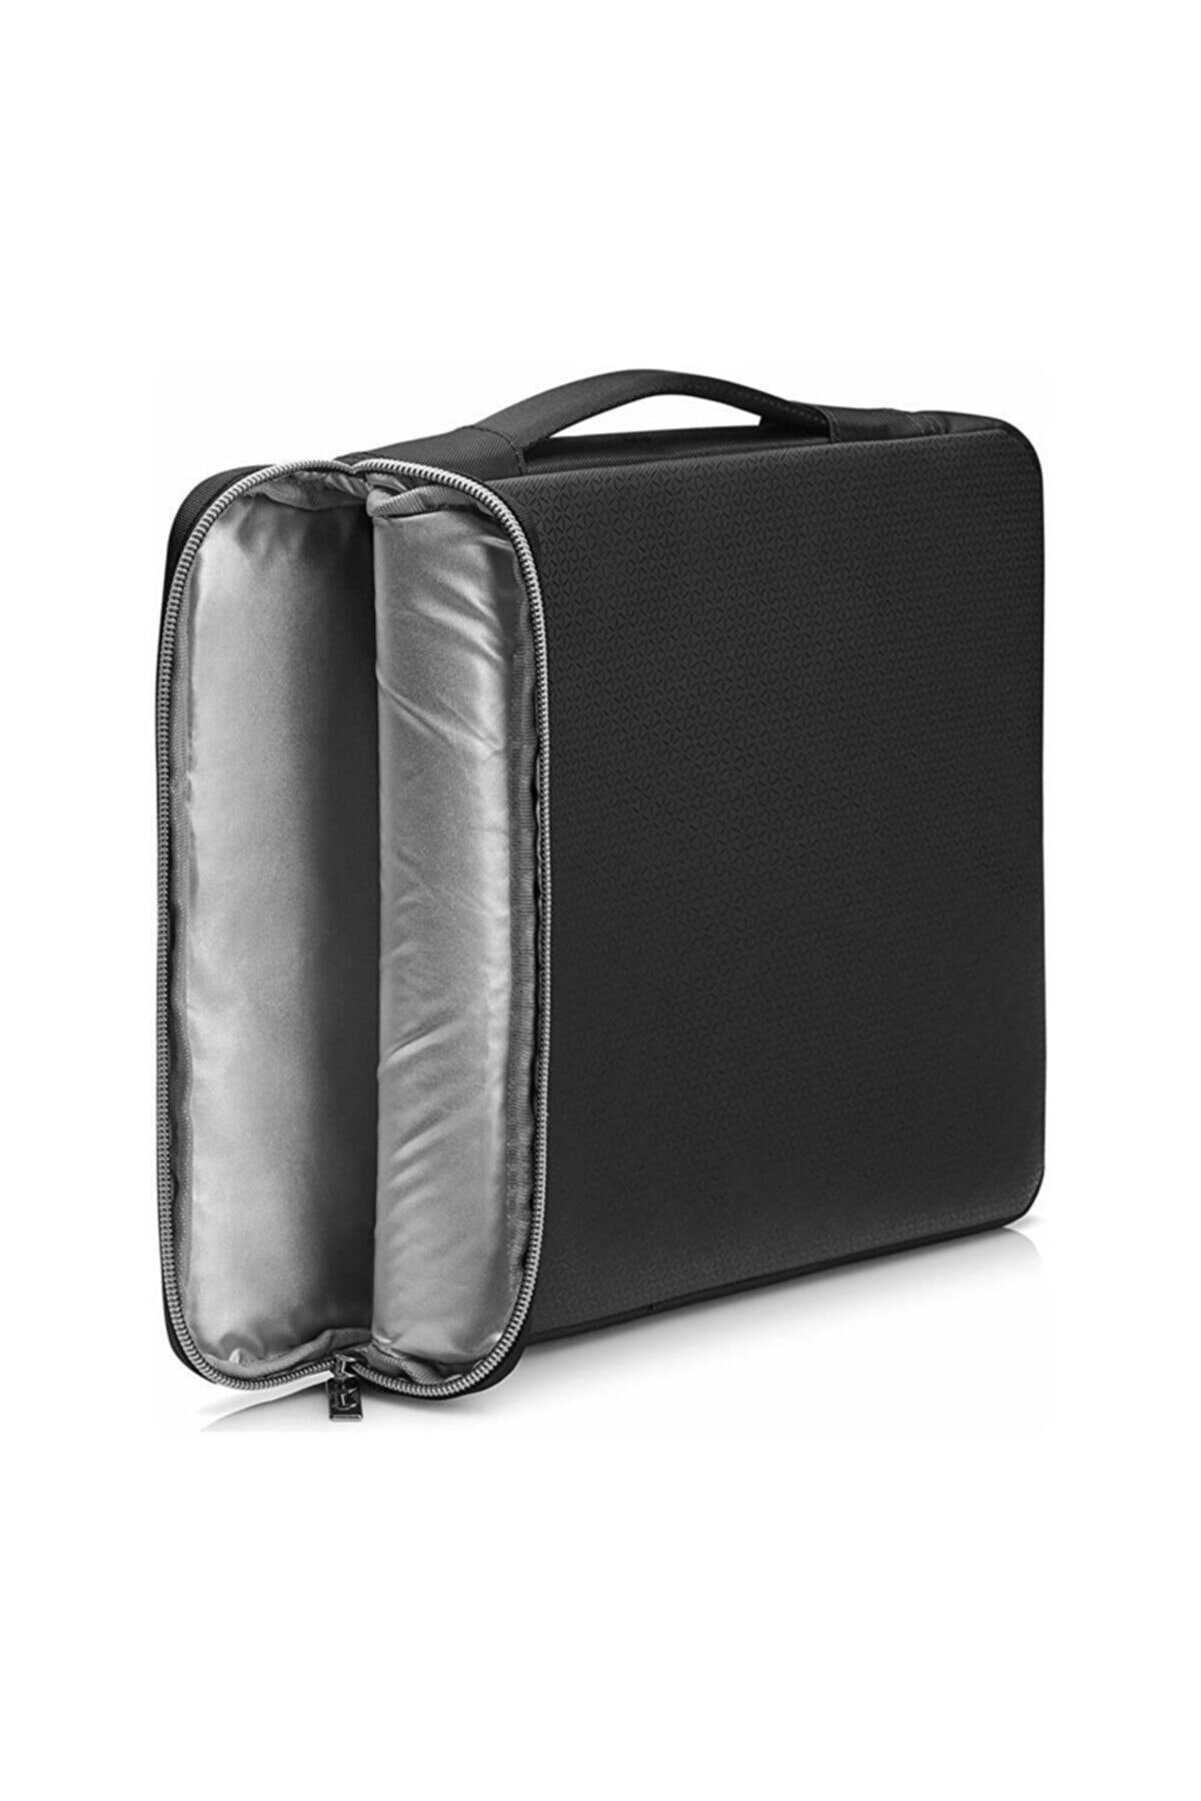 HP 15.6 Inç Notebook çantası - Gümüş & Siyah - 3xd36aa